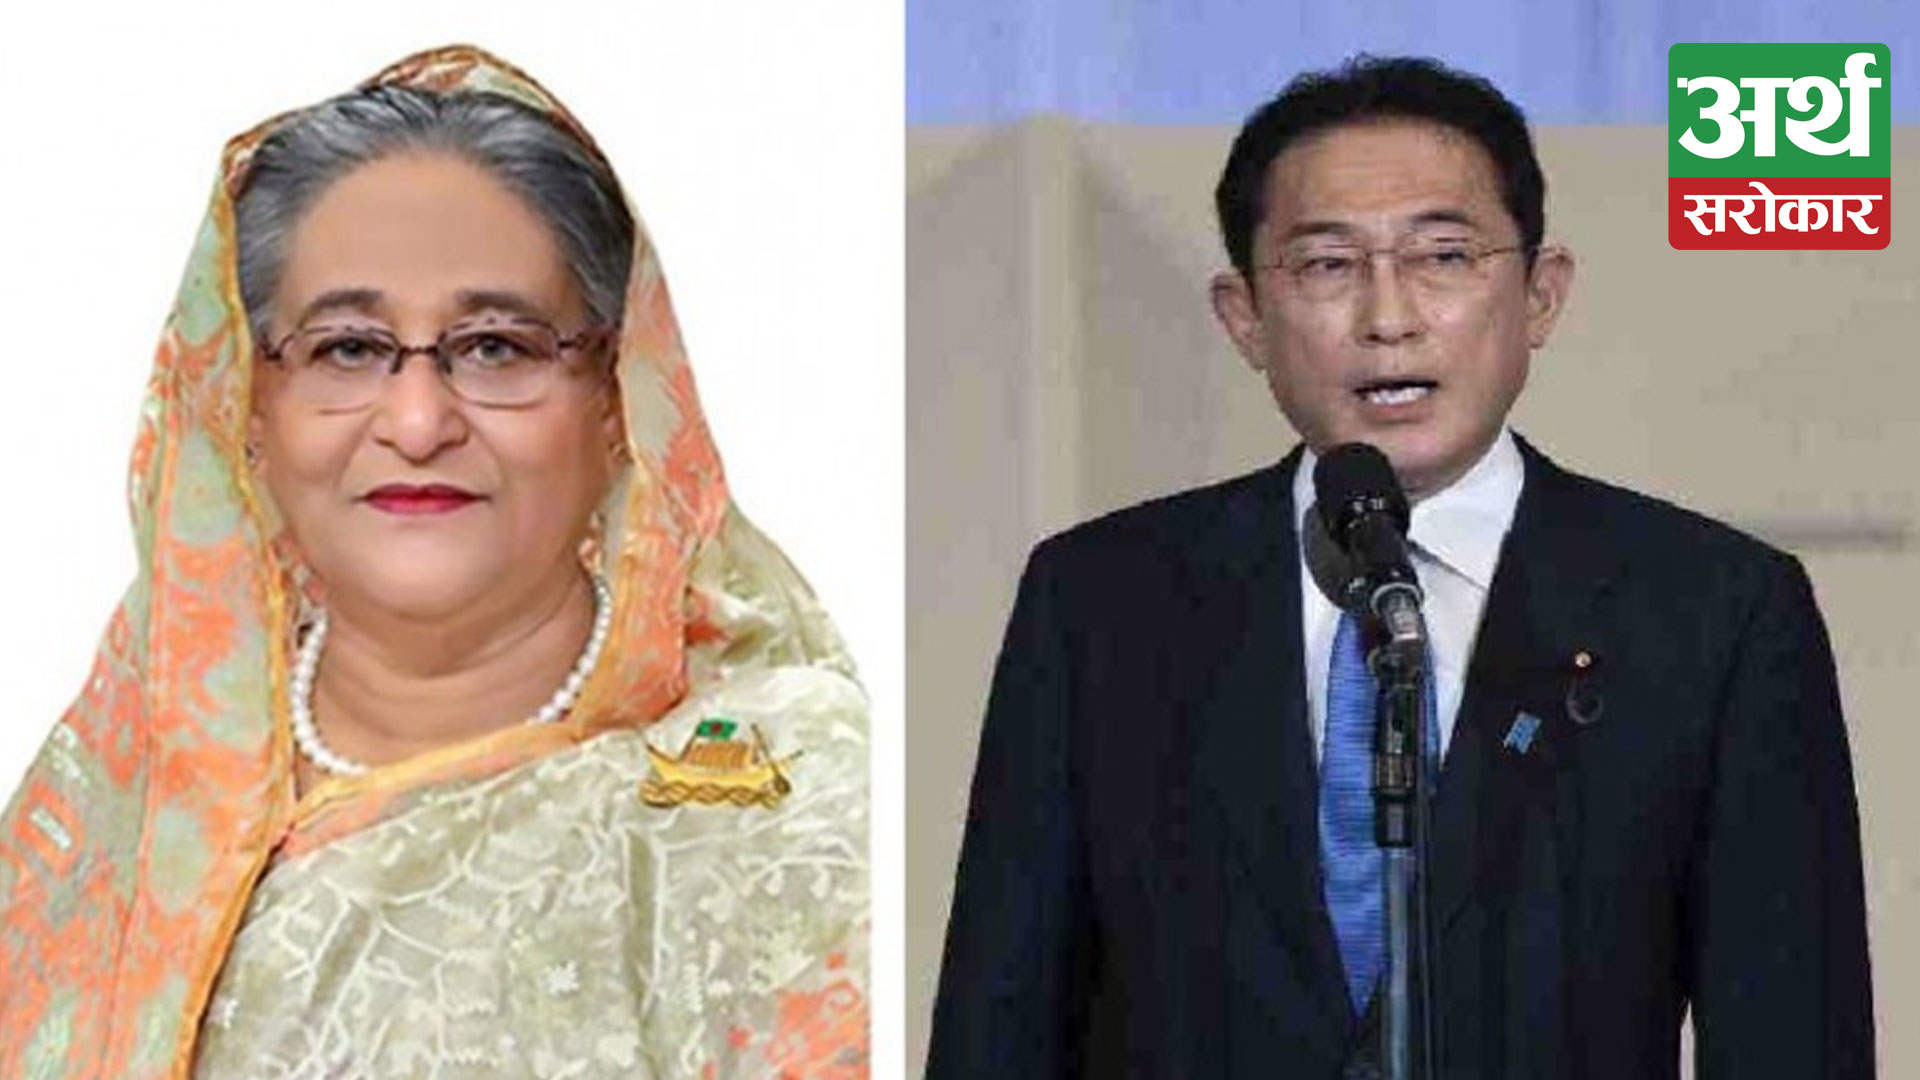 Significance of Bangladesh PM’s upcoming Japan visit